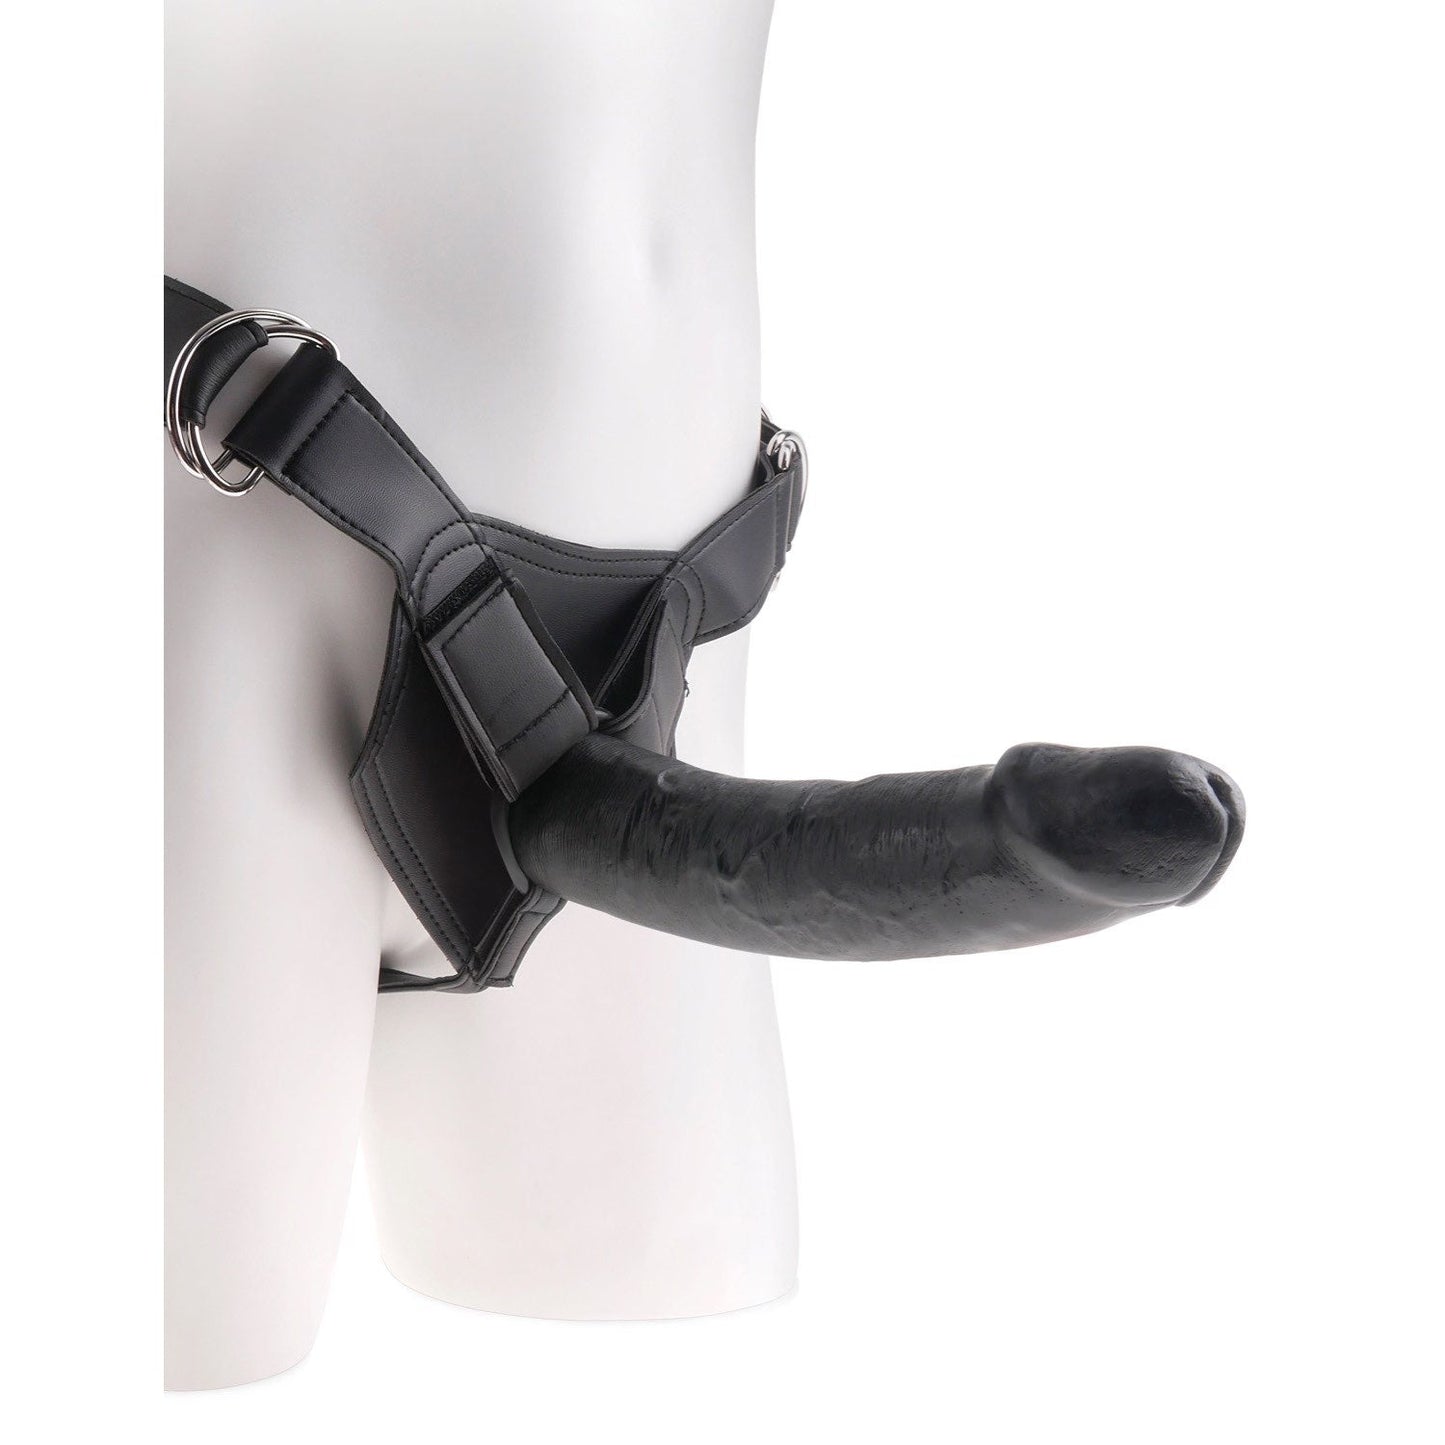 带 9 英寸阴茎的绑带式安全带 - 黑色 22.9 厘米（9 英寸）绑带式